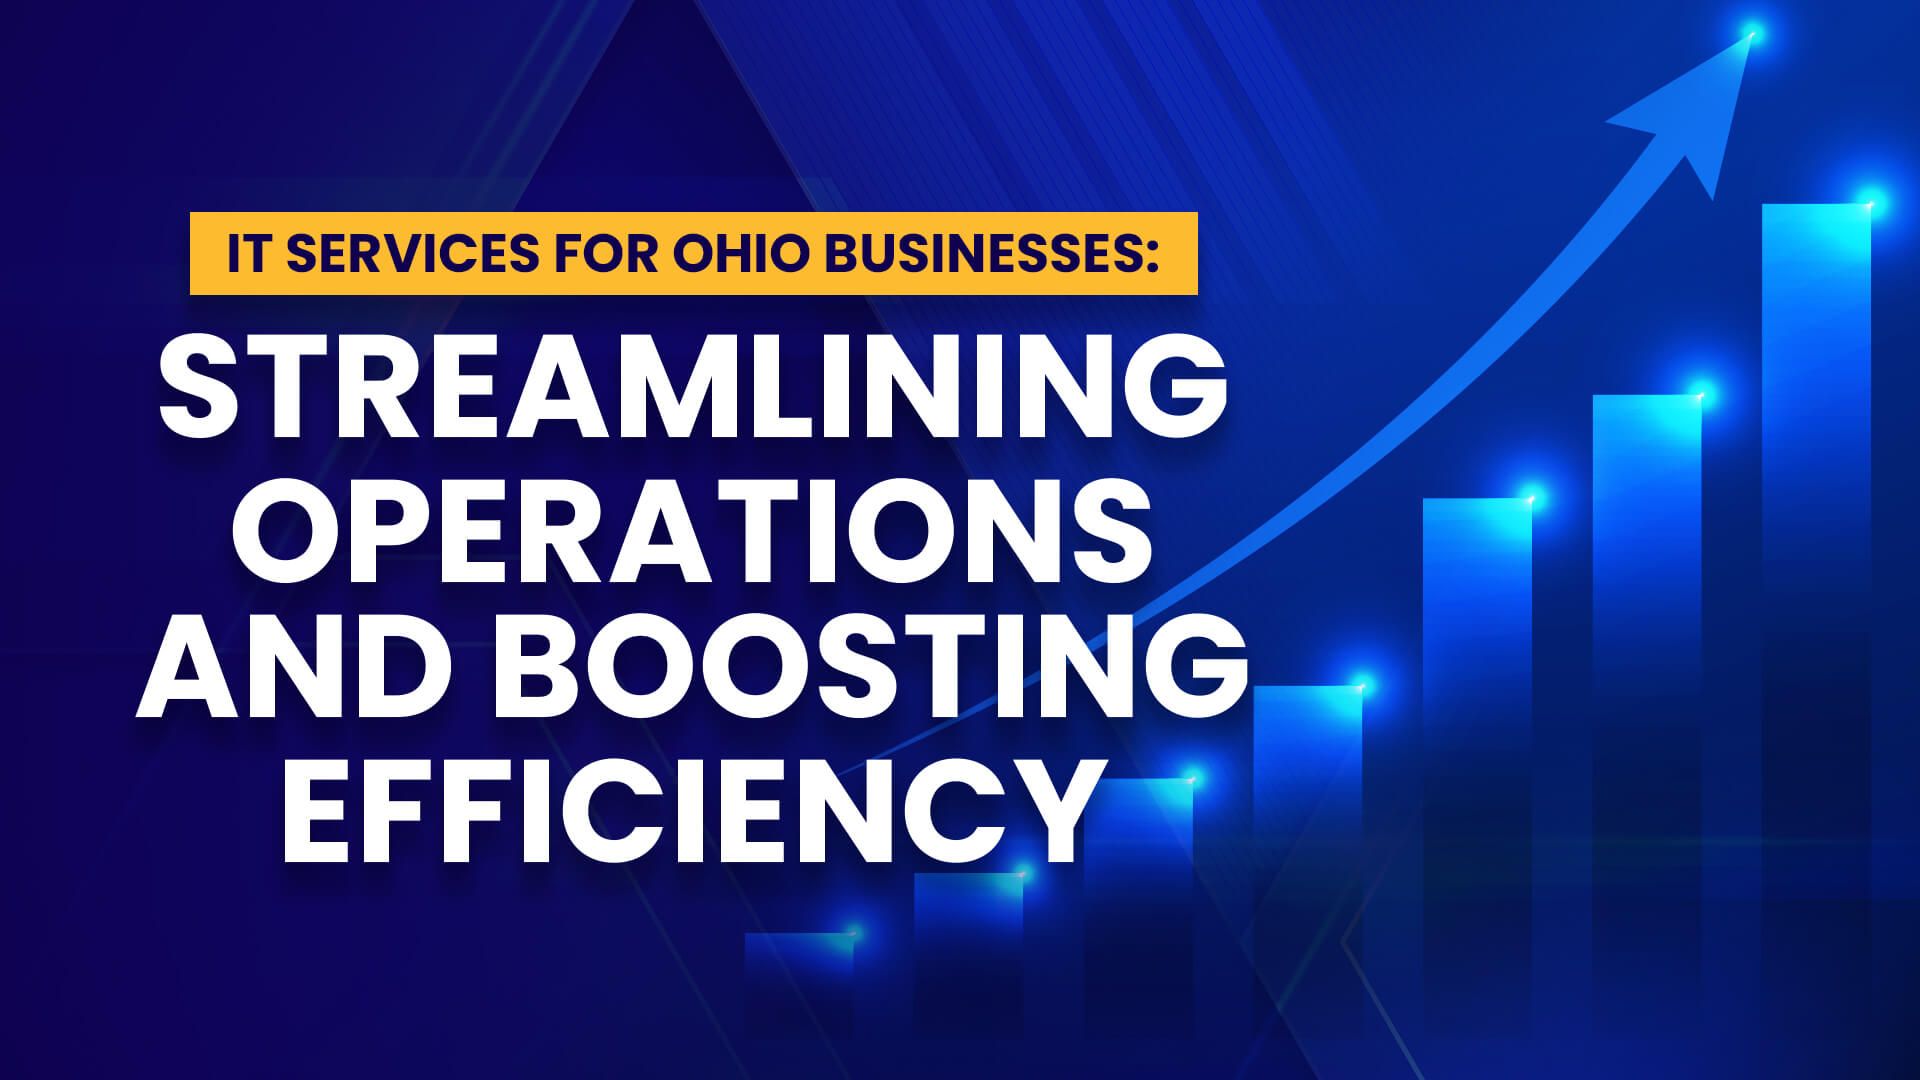 俄亥俄州企业的IT服务:简化操作和提高效率